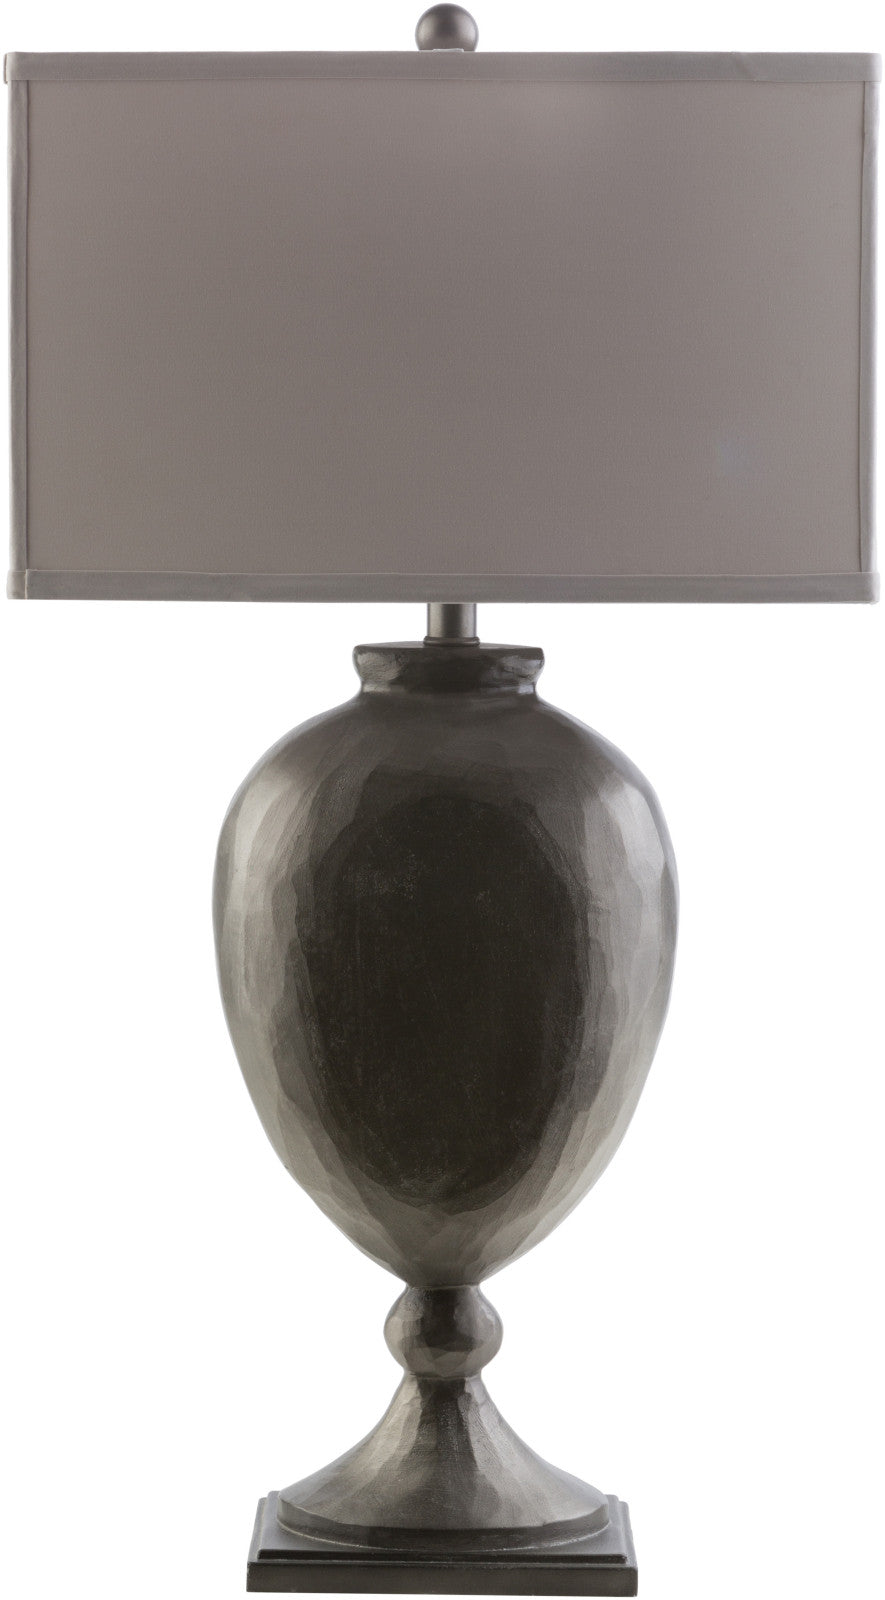 Surya Trotter TTT-620 Grey Lamp Table Lamp